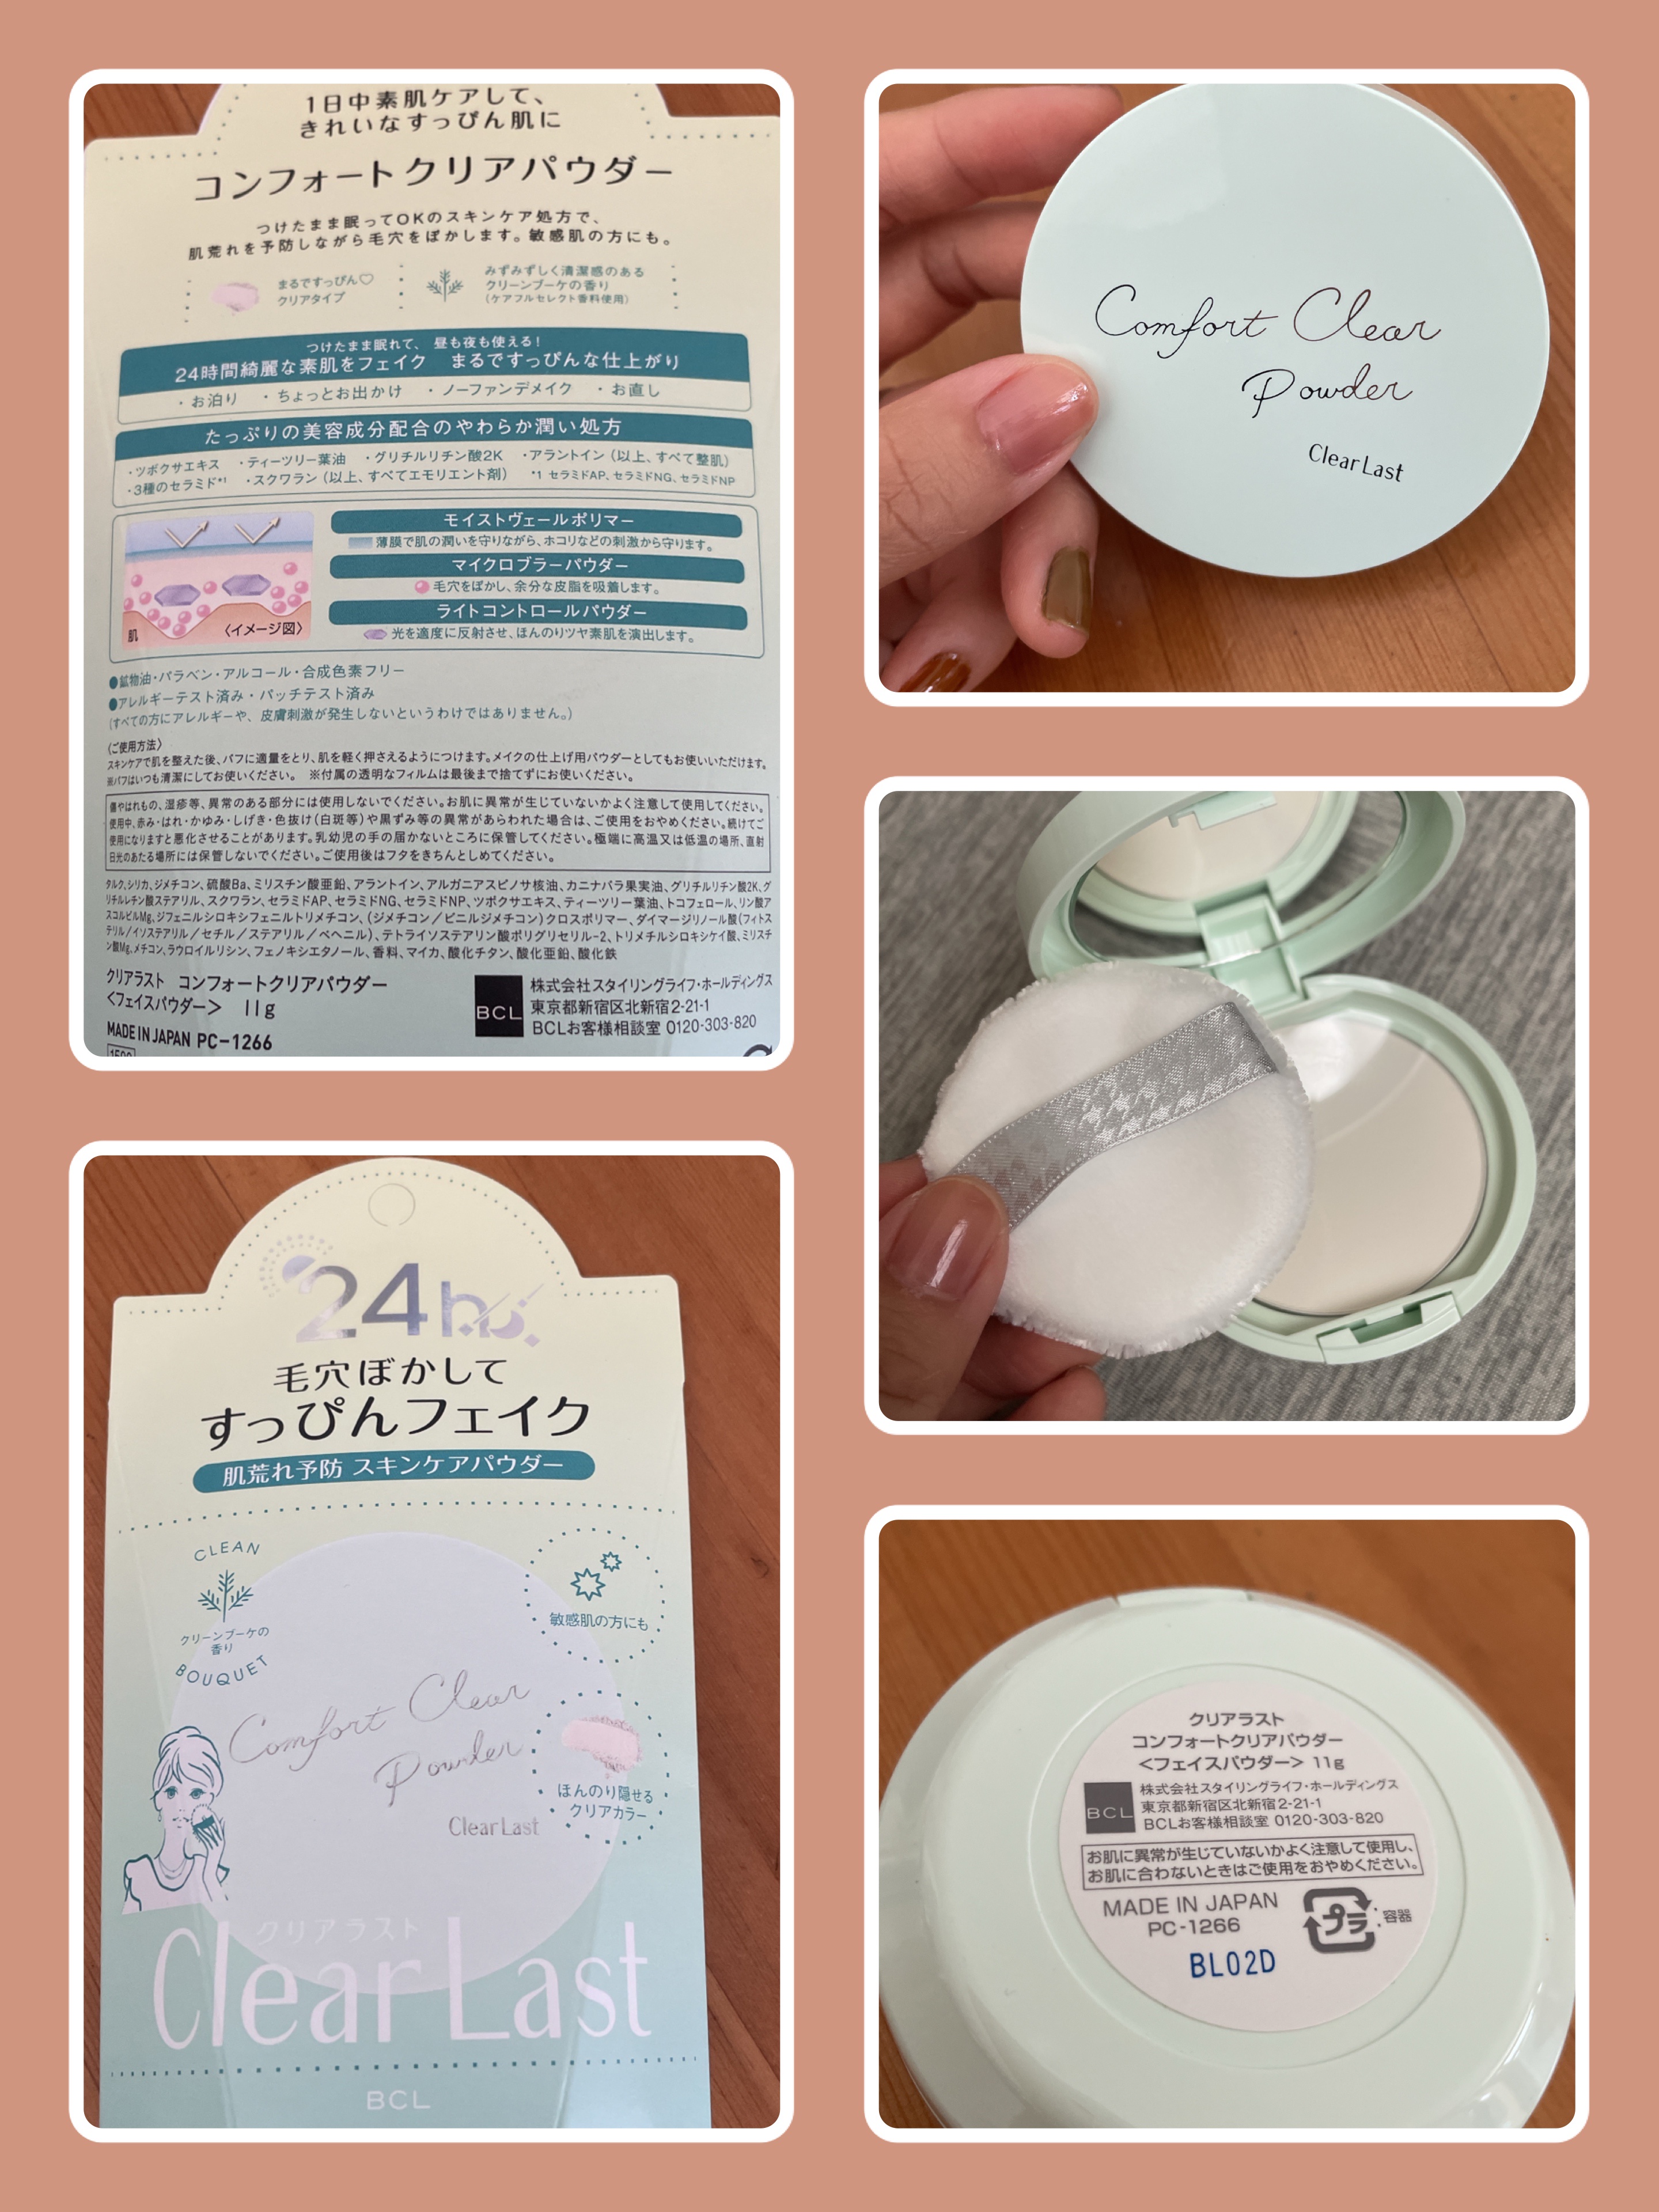 クリアラスト コンフォートクリアパウダー 177.1円 コスメ・香水・美容 ベースメイク フェイスパウダー